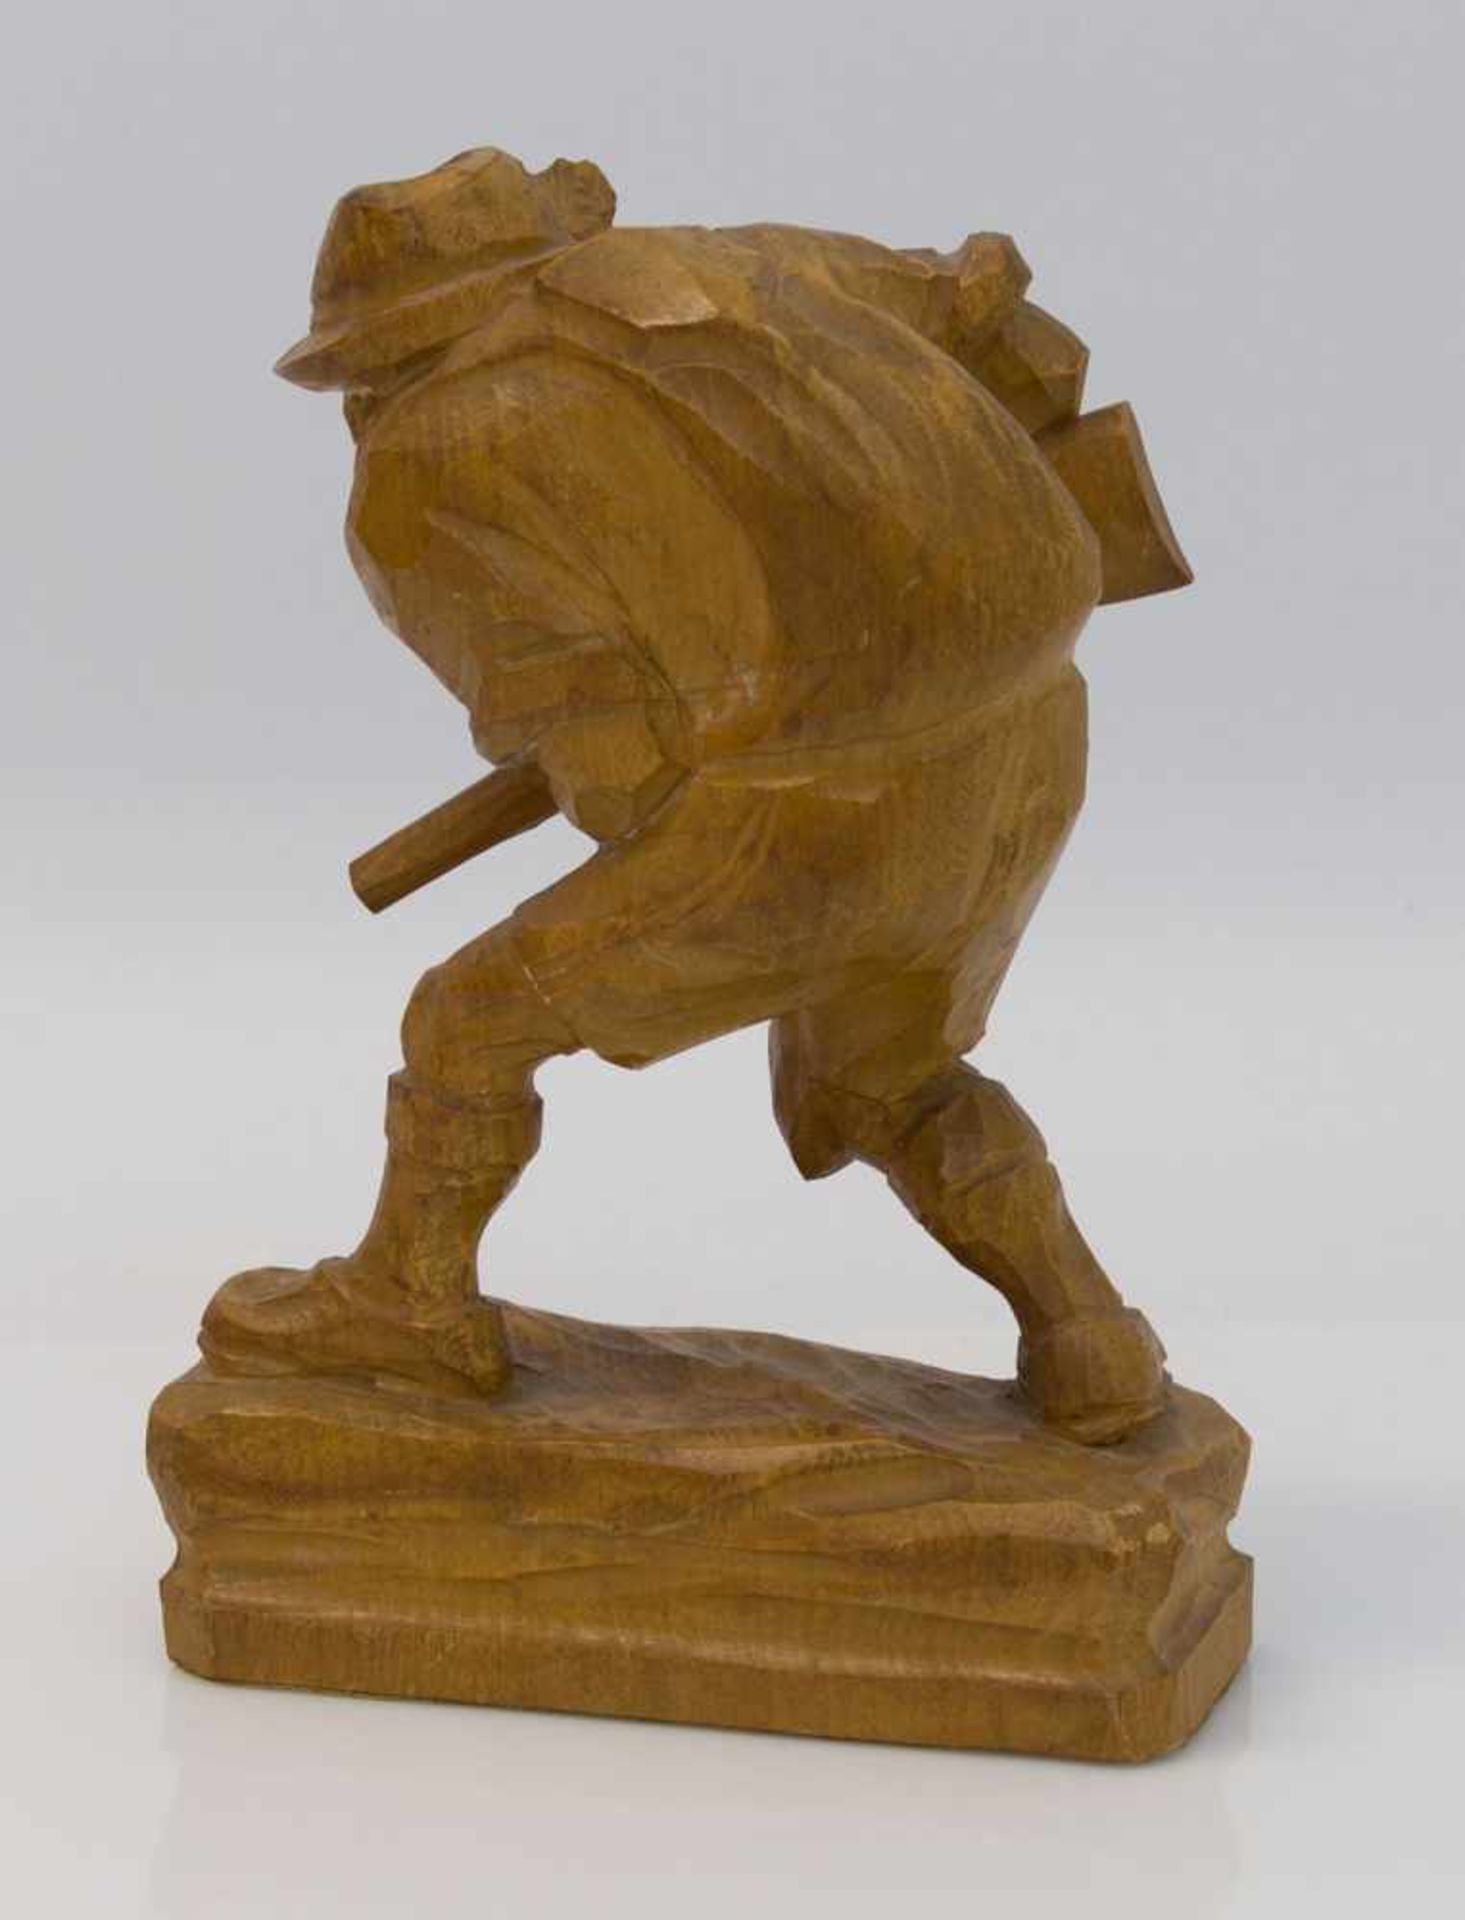 Wilddieb geschnitzte Holzfigur eines Wilddiebes auf der Pirsch, H. 19 cm - Bild 2 aus 2